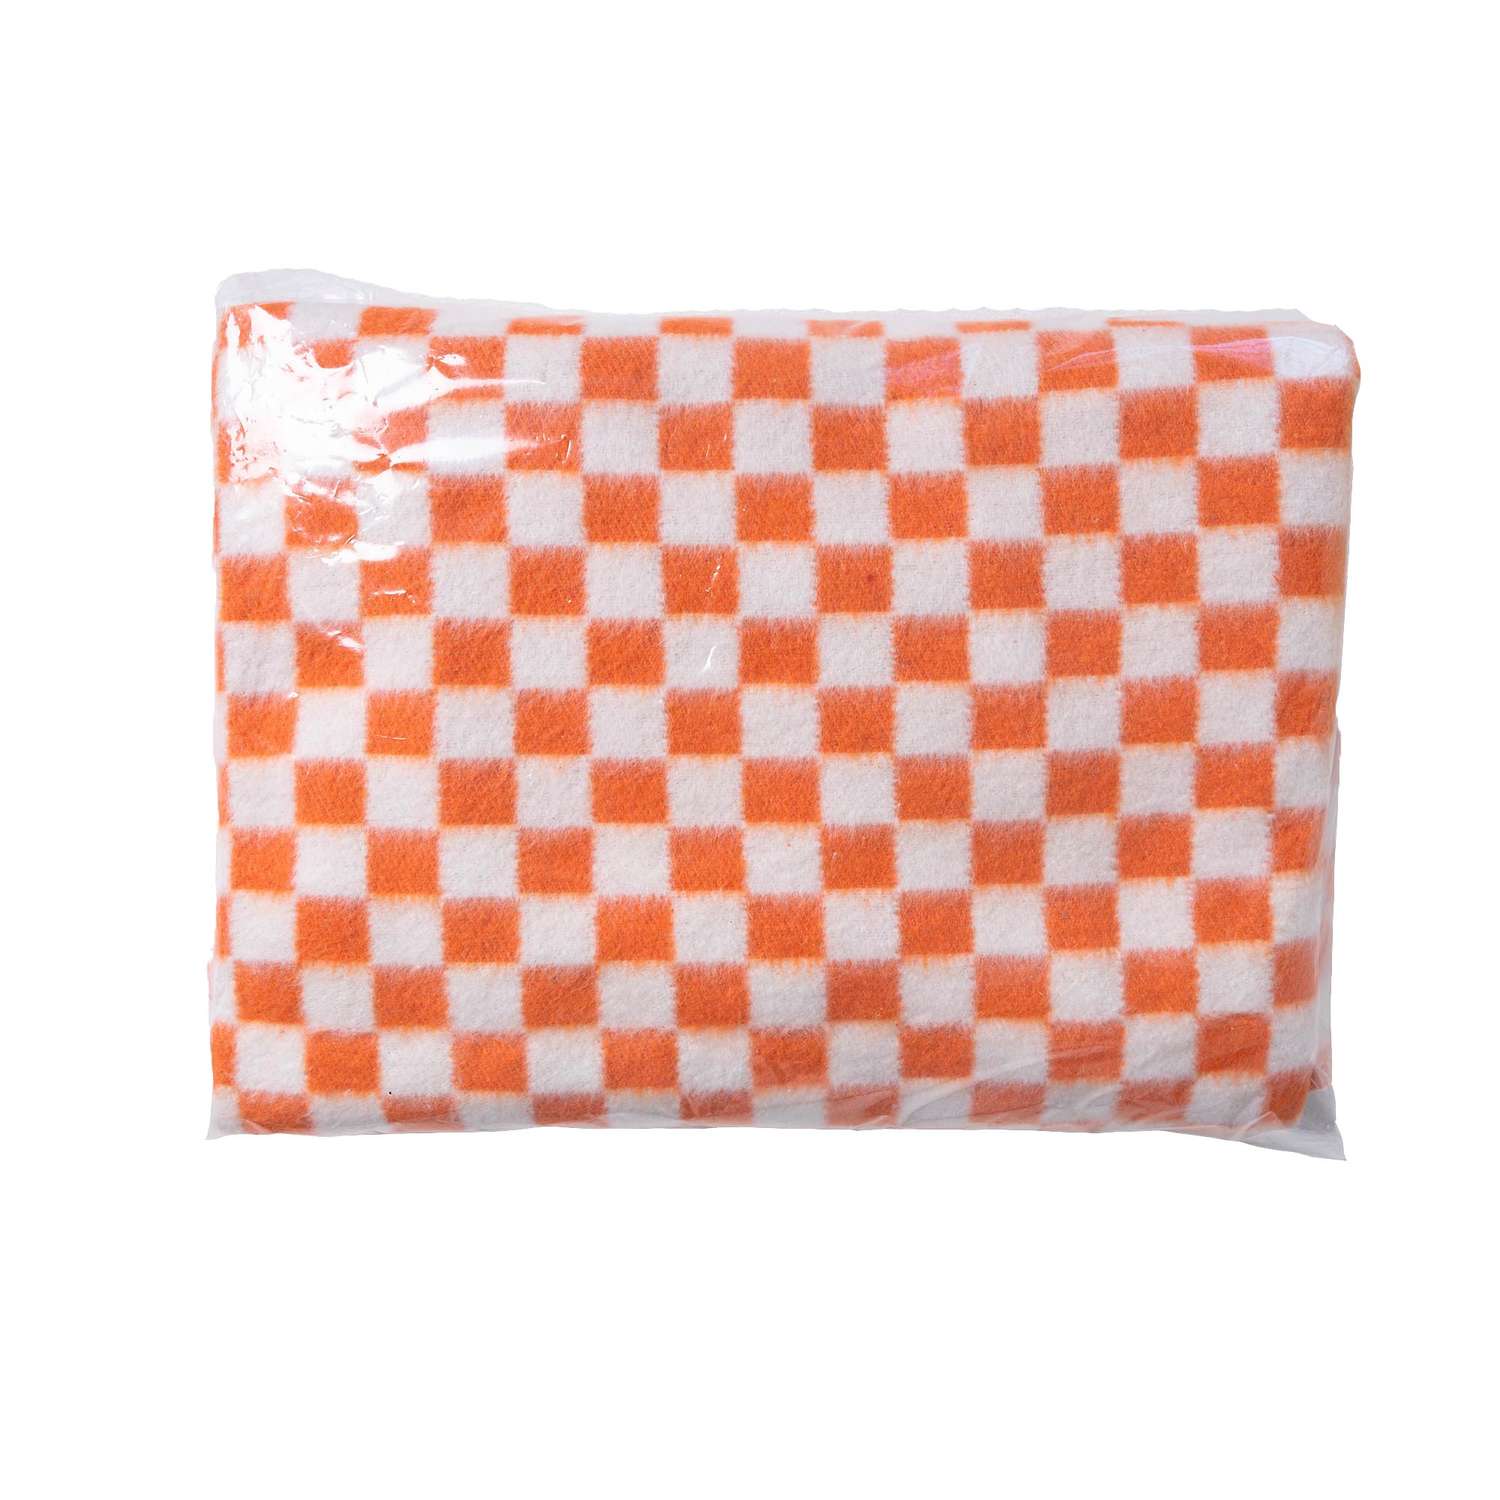 Одеяло байковое Суконная фабрика г. Шуя 140х205 рисунок клетка оранжевый - фото 1